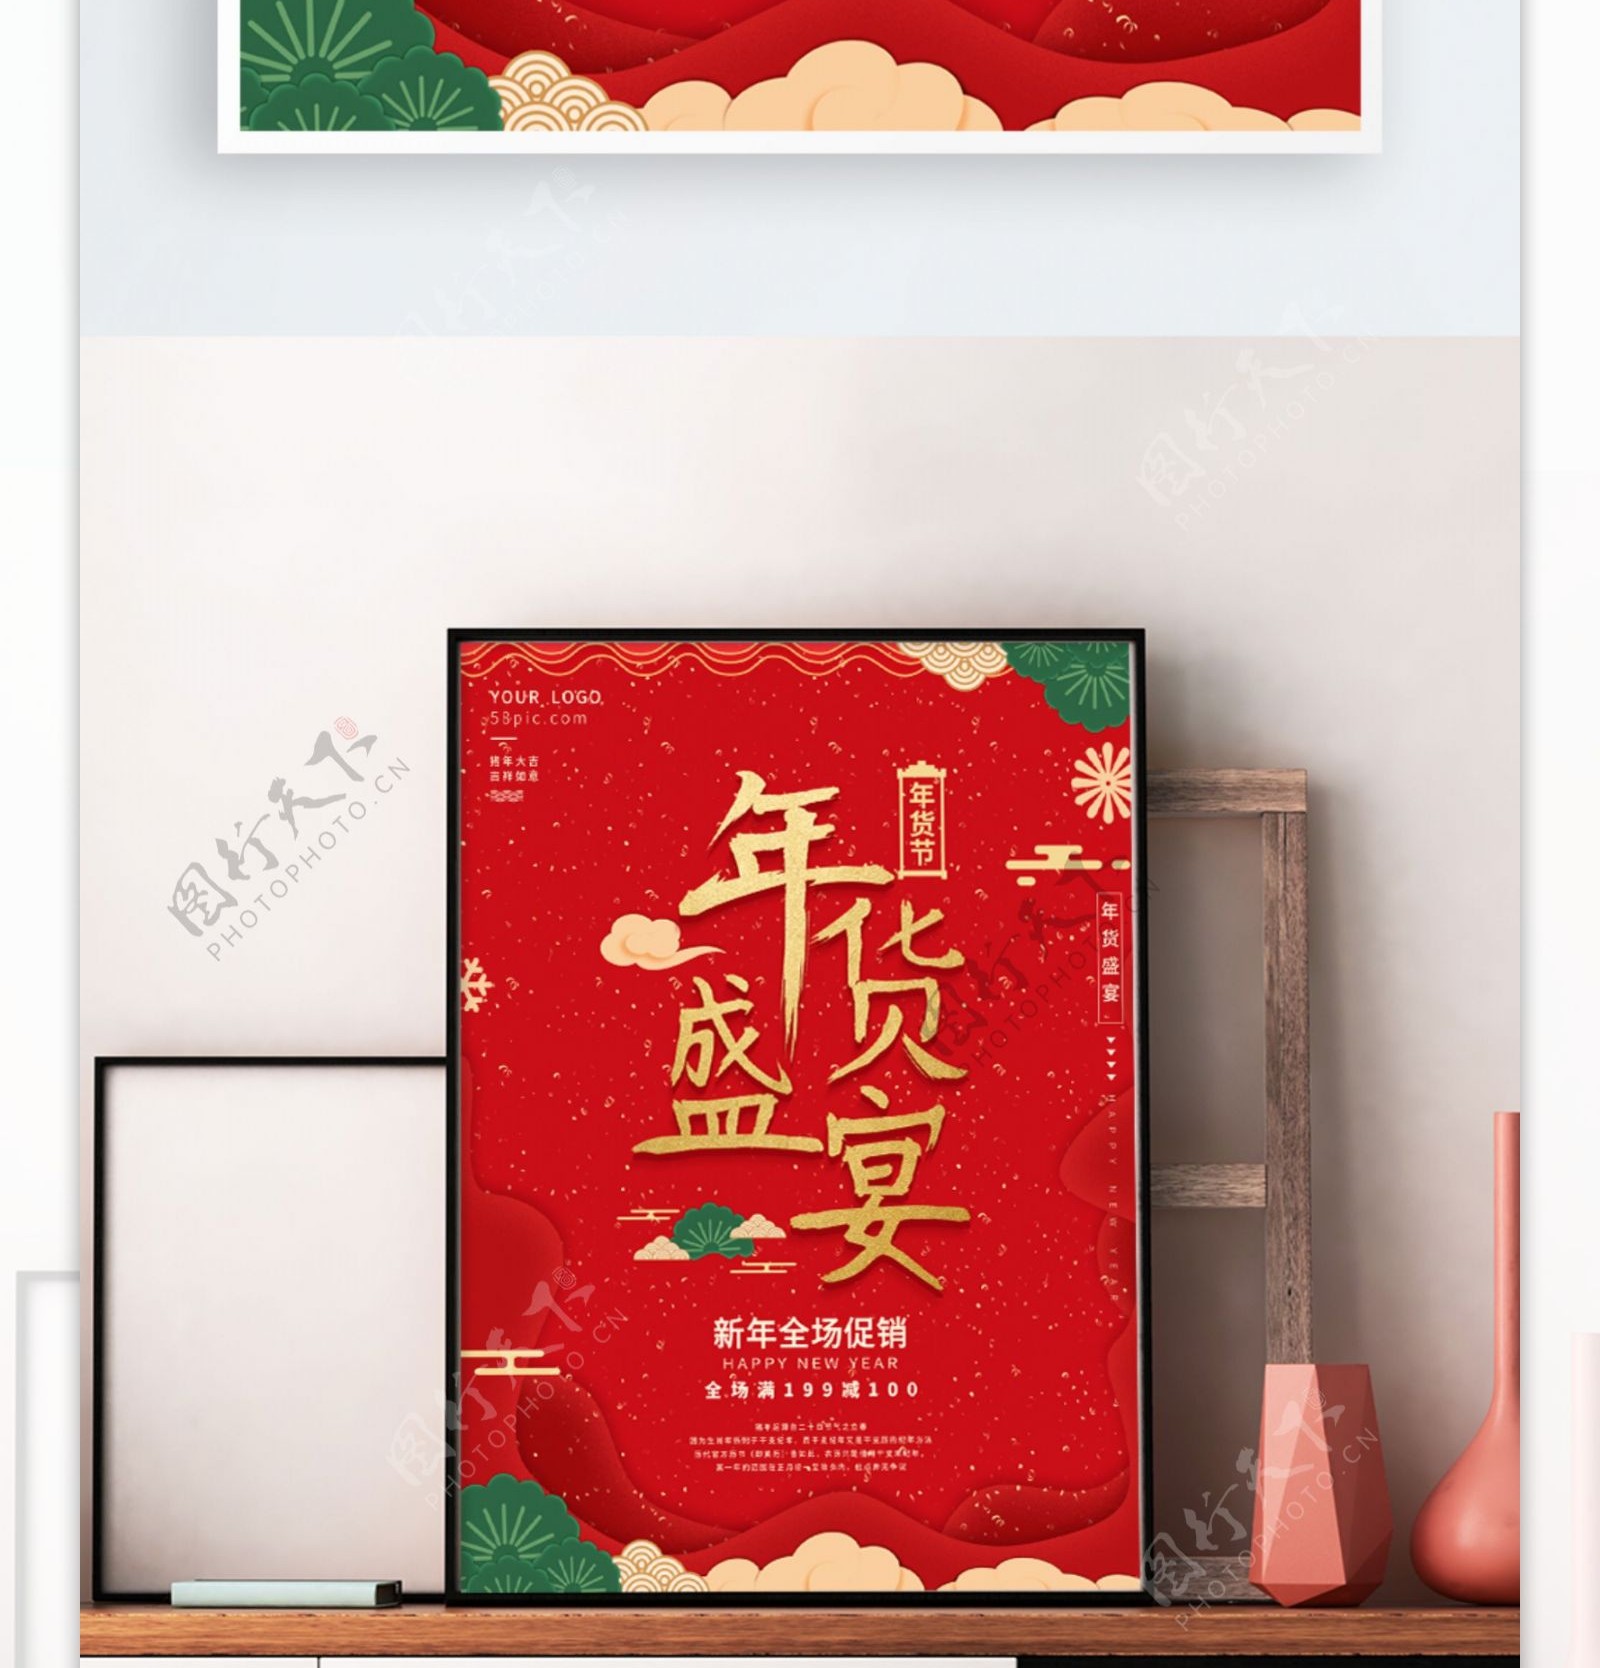 红喜庆新年商场促销节日海报年货盛宴年货节